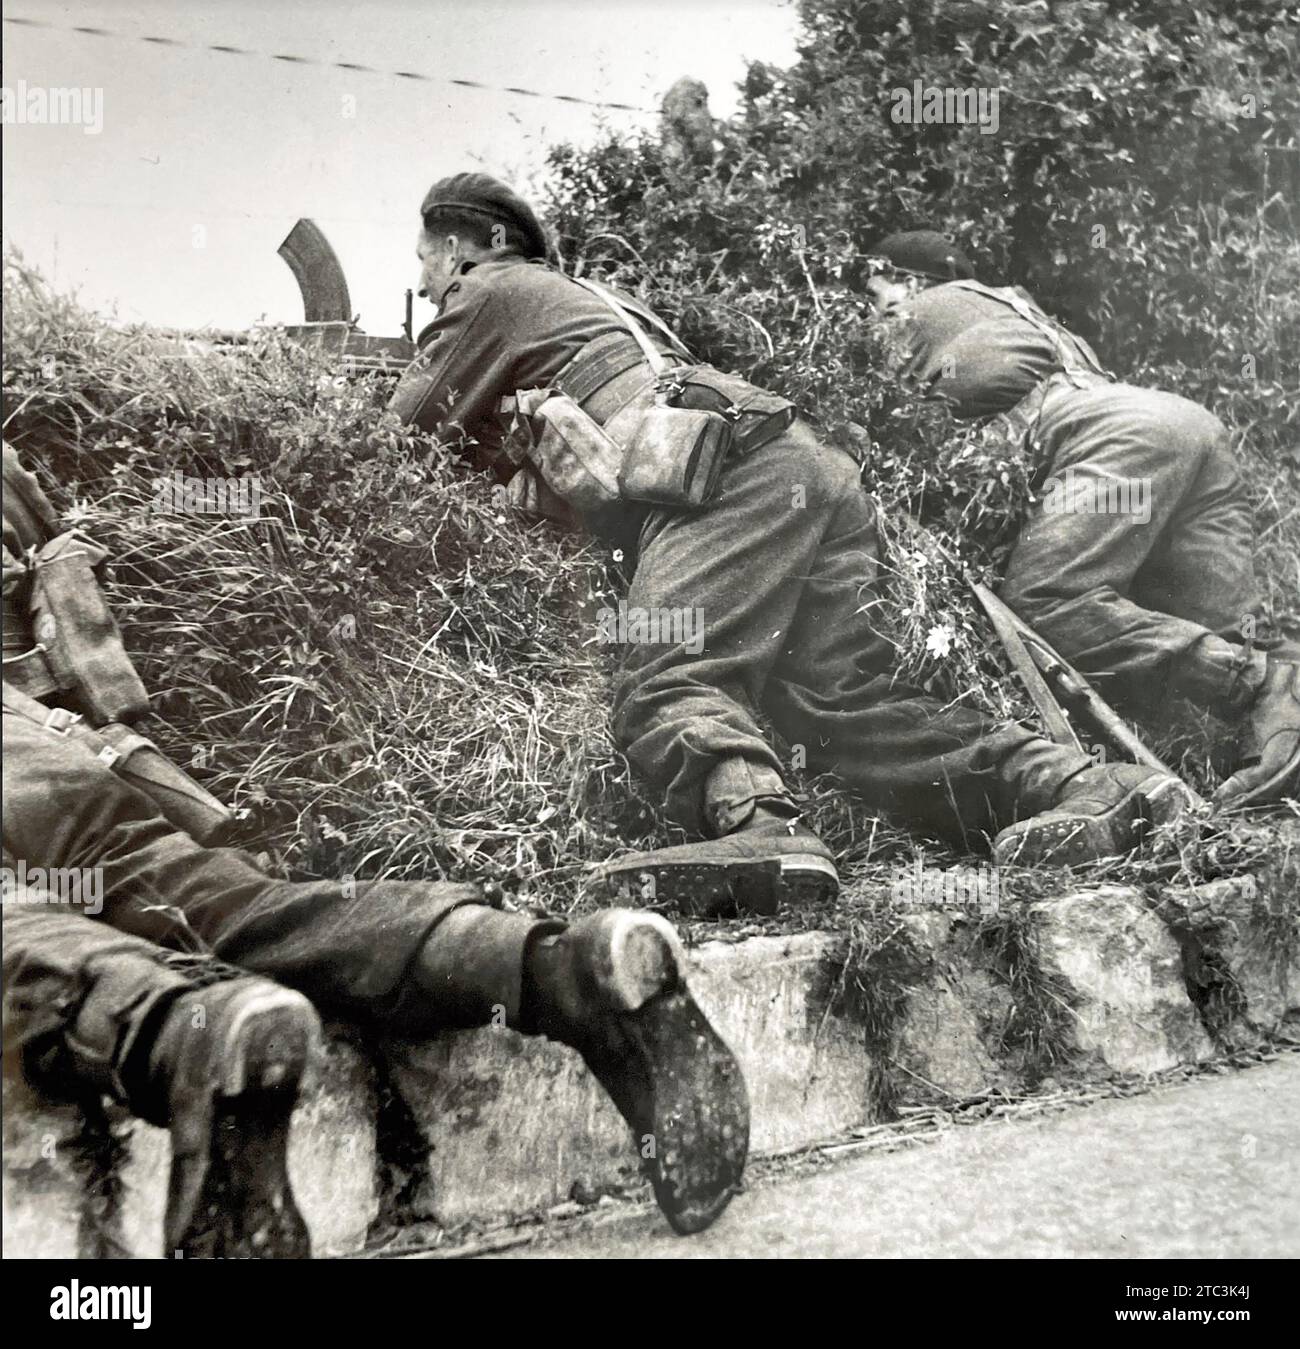 INVASIONE DELLA NORMANDIA gruppo Commando britannico con un cannone Bren nel paese bocage della francia settentrionale, giugno 1944 Foto Stock